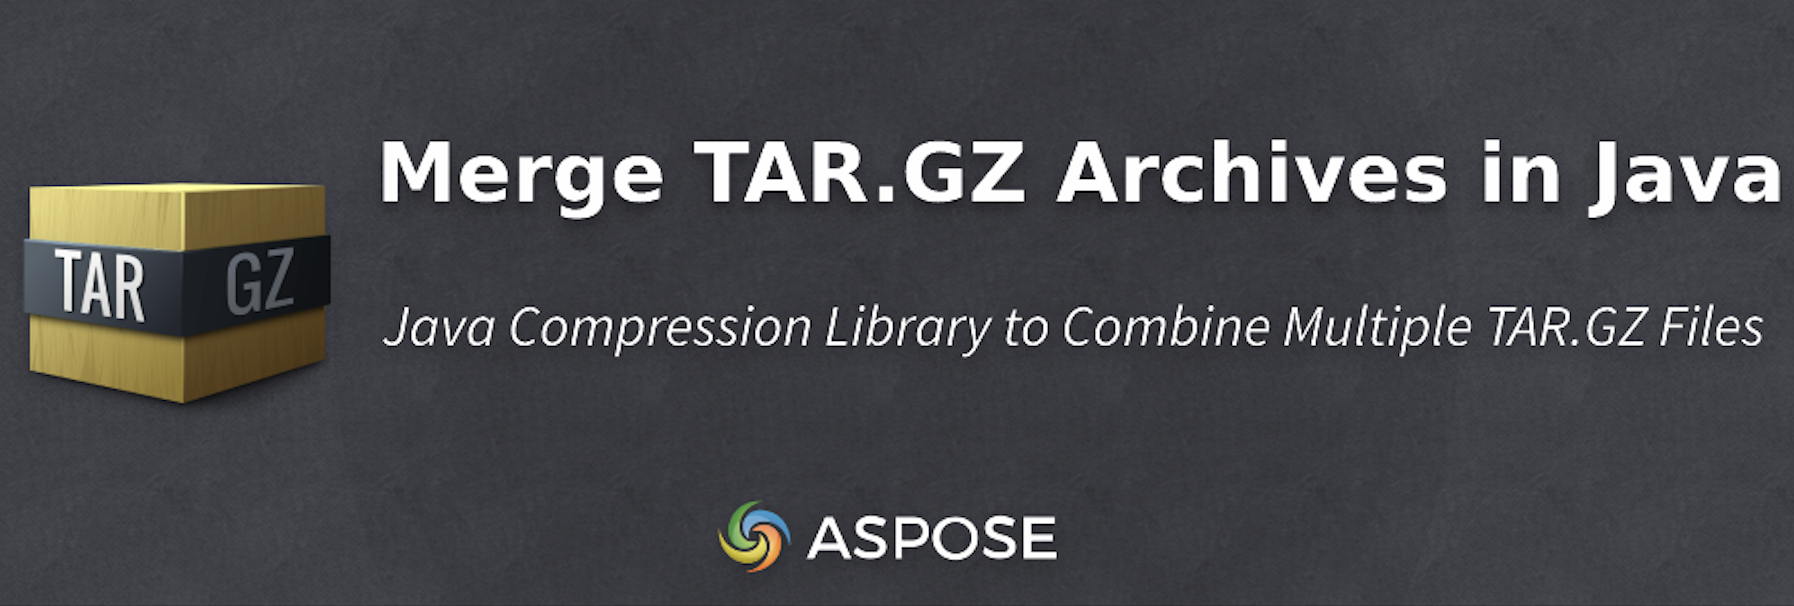 รวมไฟล์เก็บถาวร TAR.GZ ใน Java โดยทางโปรแกรม